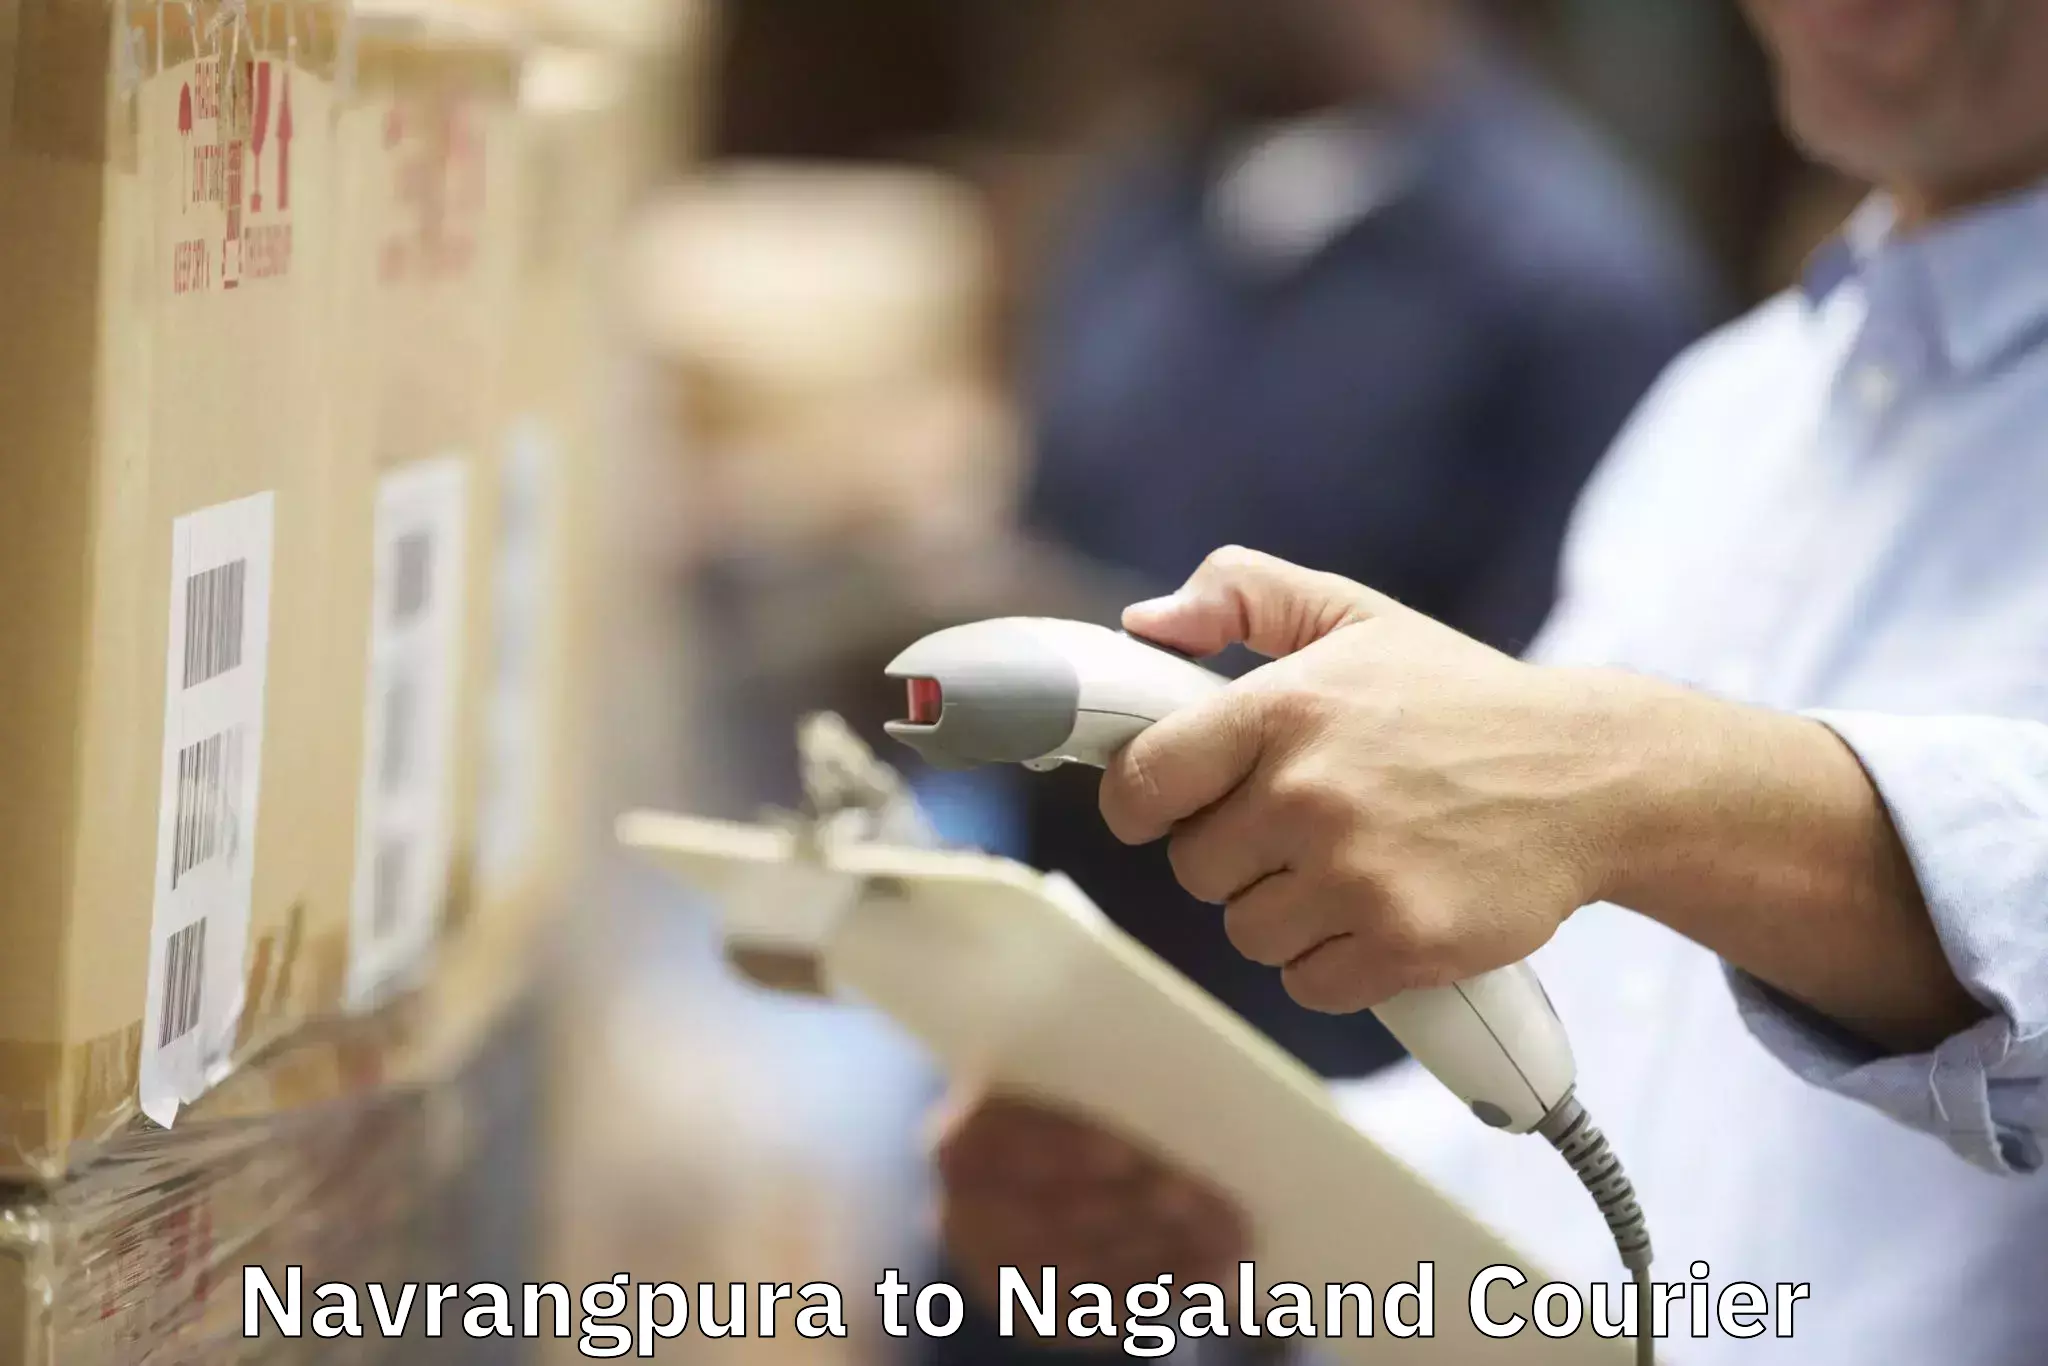 Moving and handling services Navrangpura to Nagaland